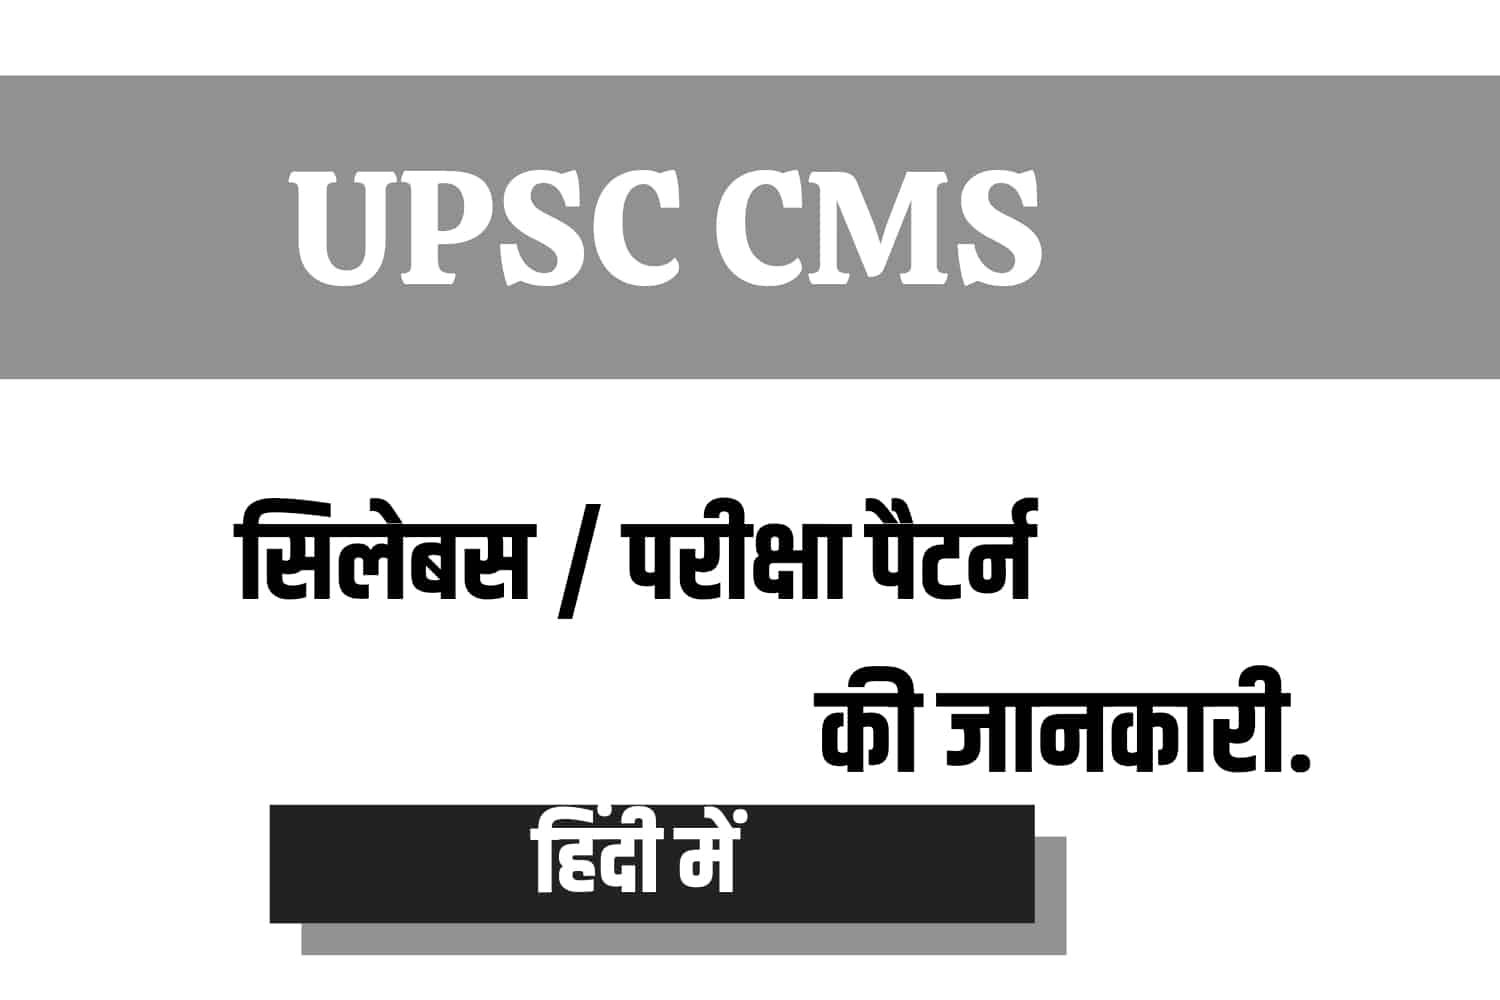 UPSC CMS Syllabus In Hindi |यूपीएससी CMS सिलेबस हिंदी में